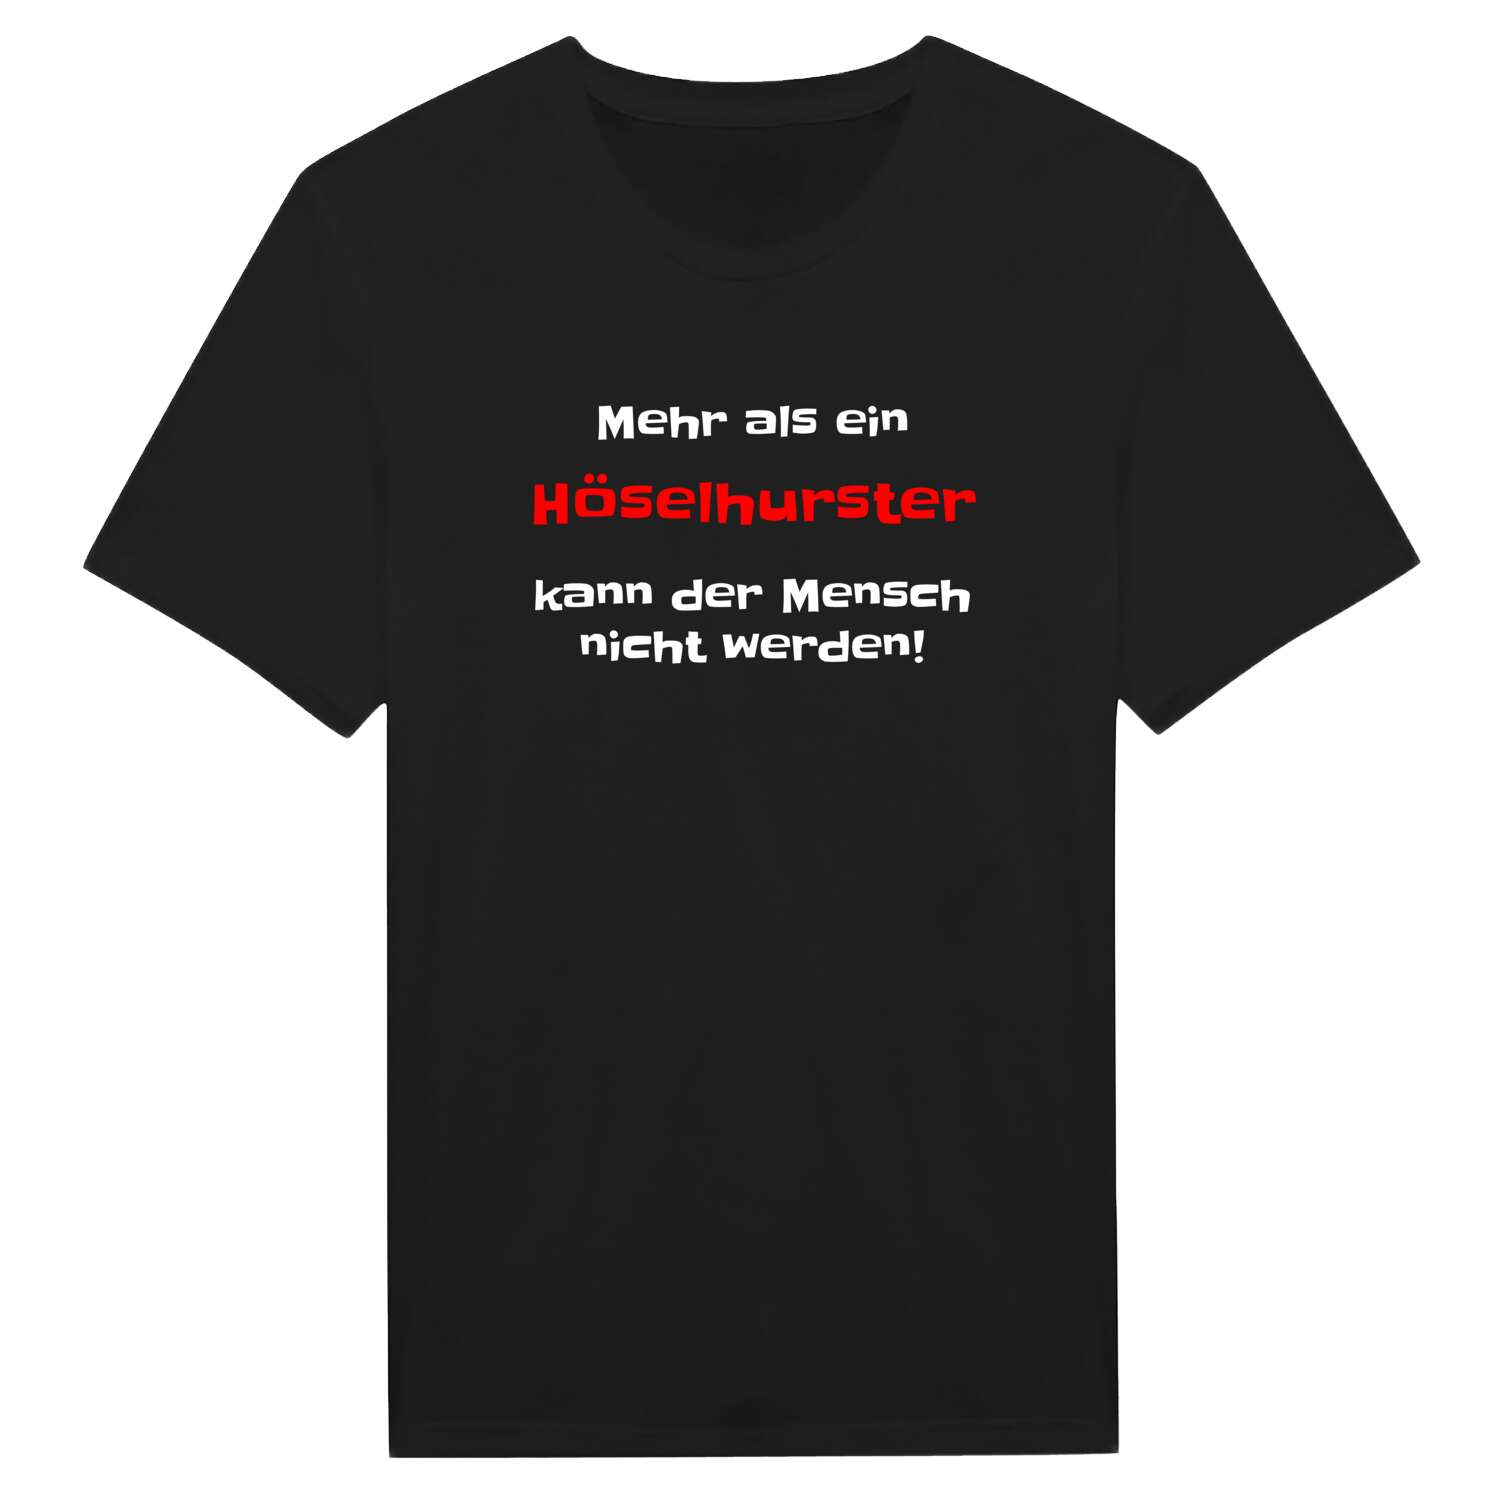 Höselhurst T-Shirt »Mehr als ein«